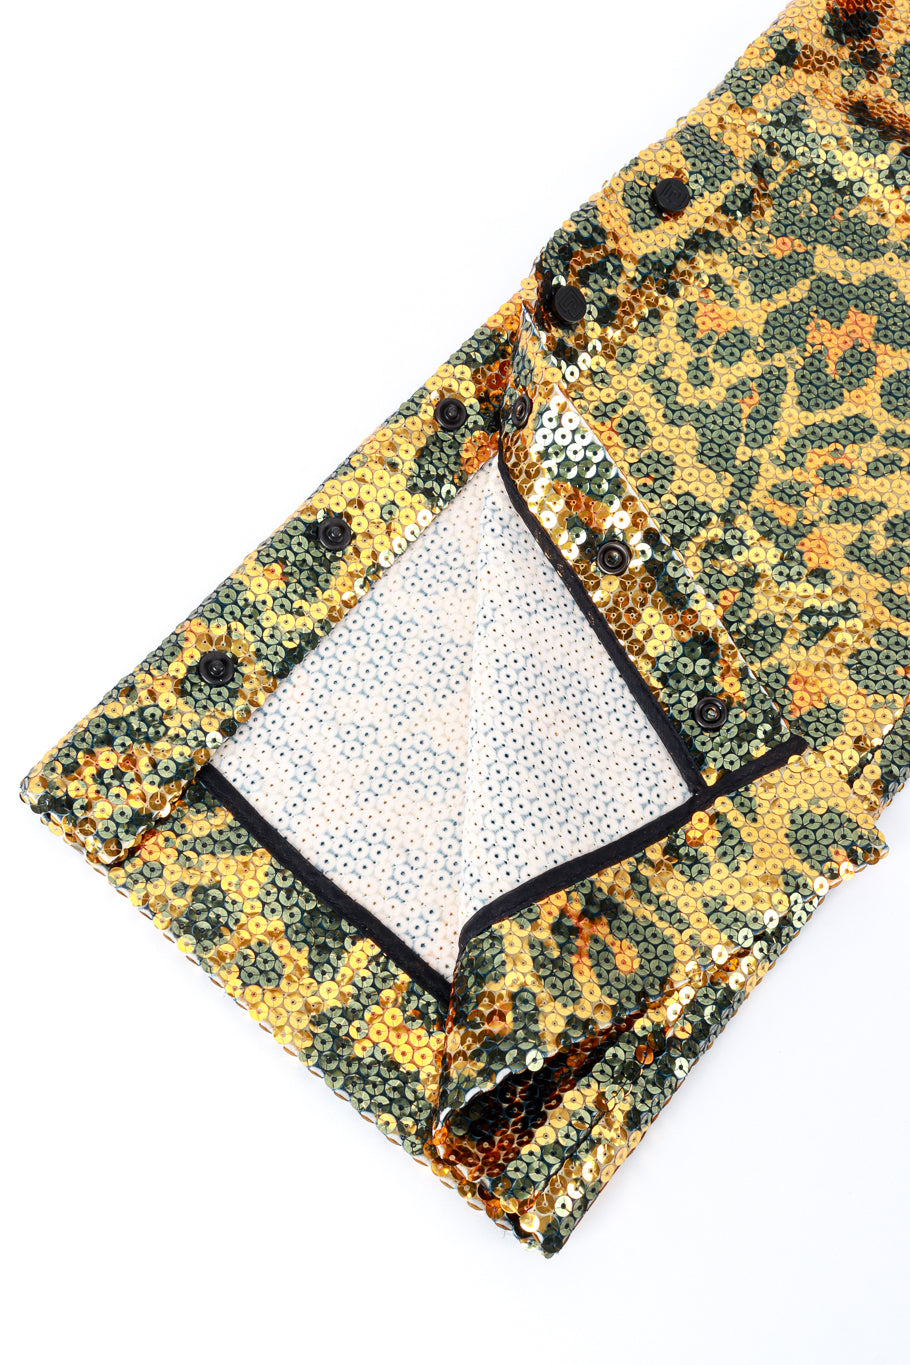 Paco Rabanne Sequin Leopard Pants cuff detail @RECESS LA